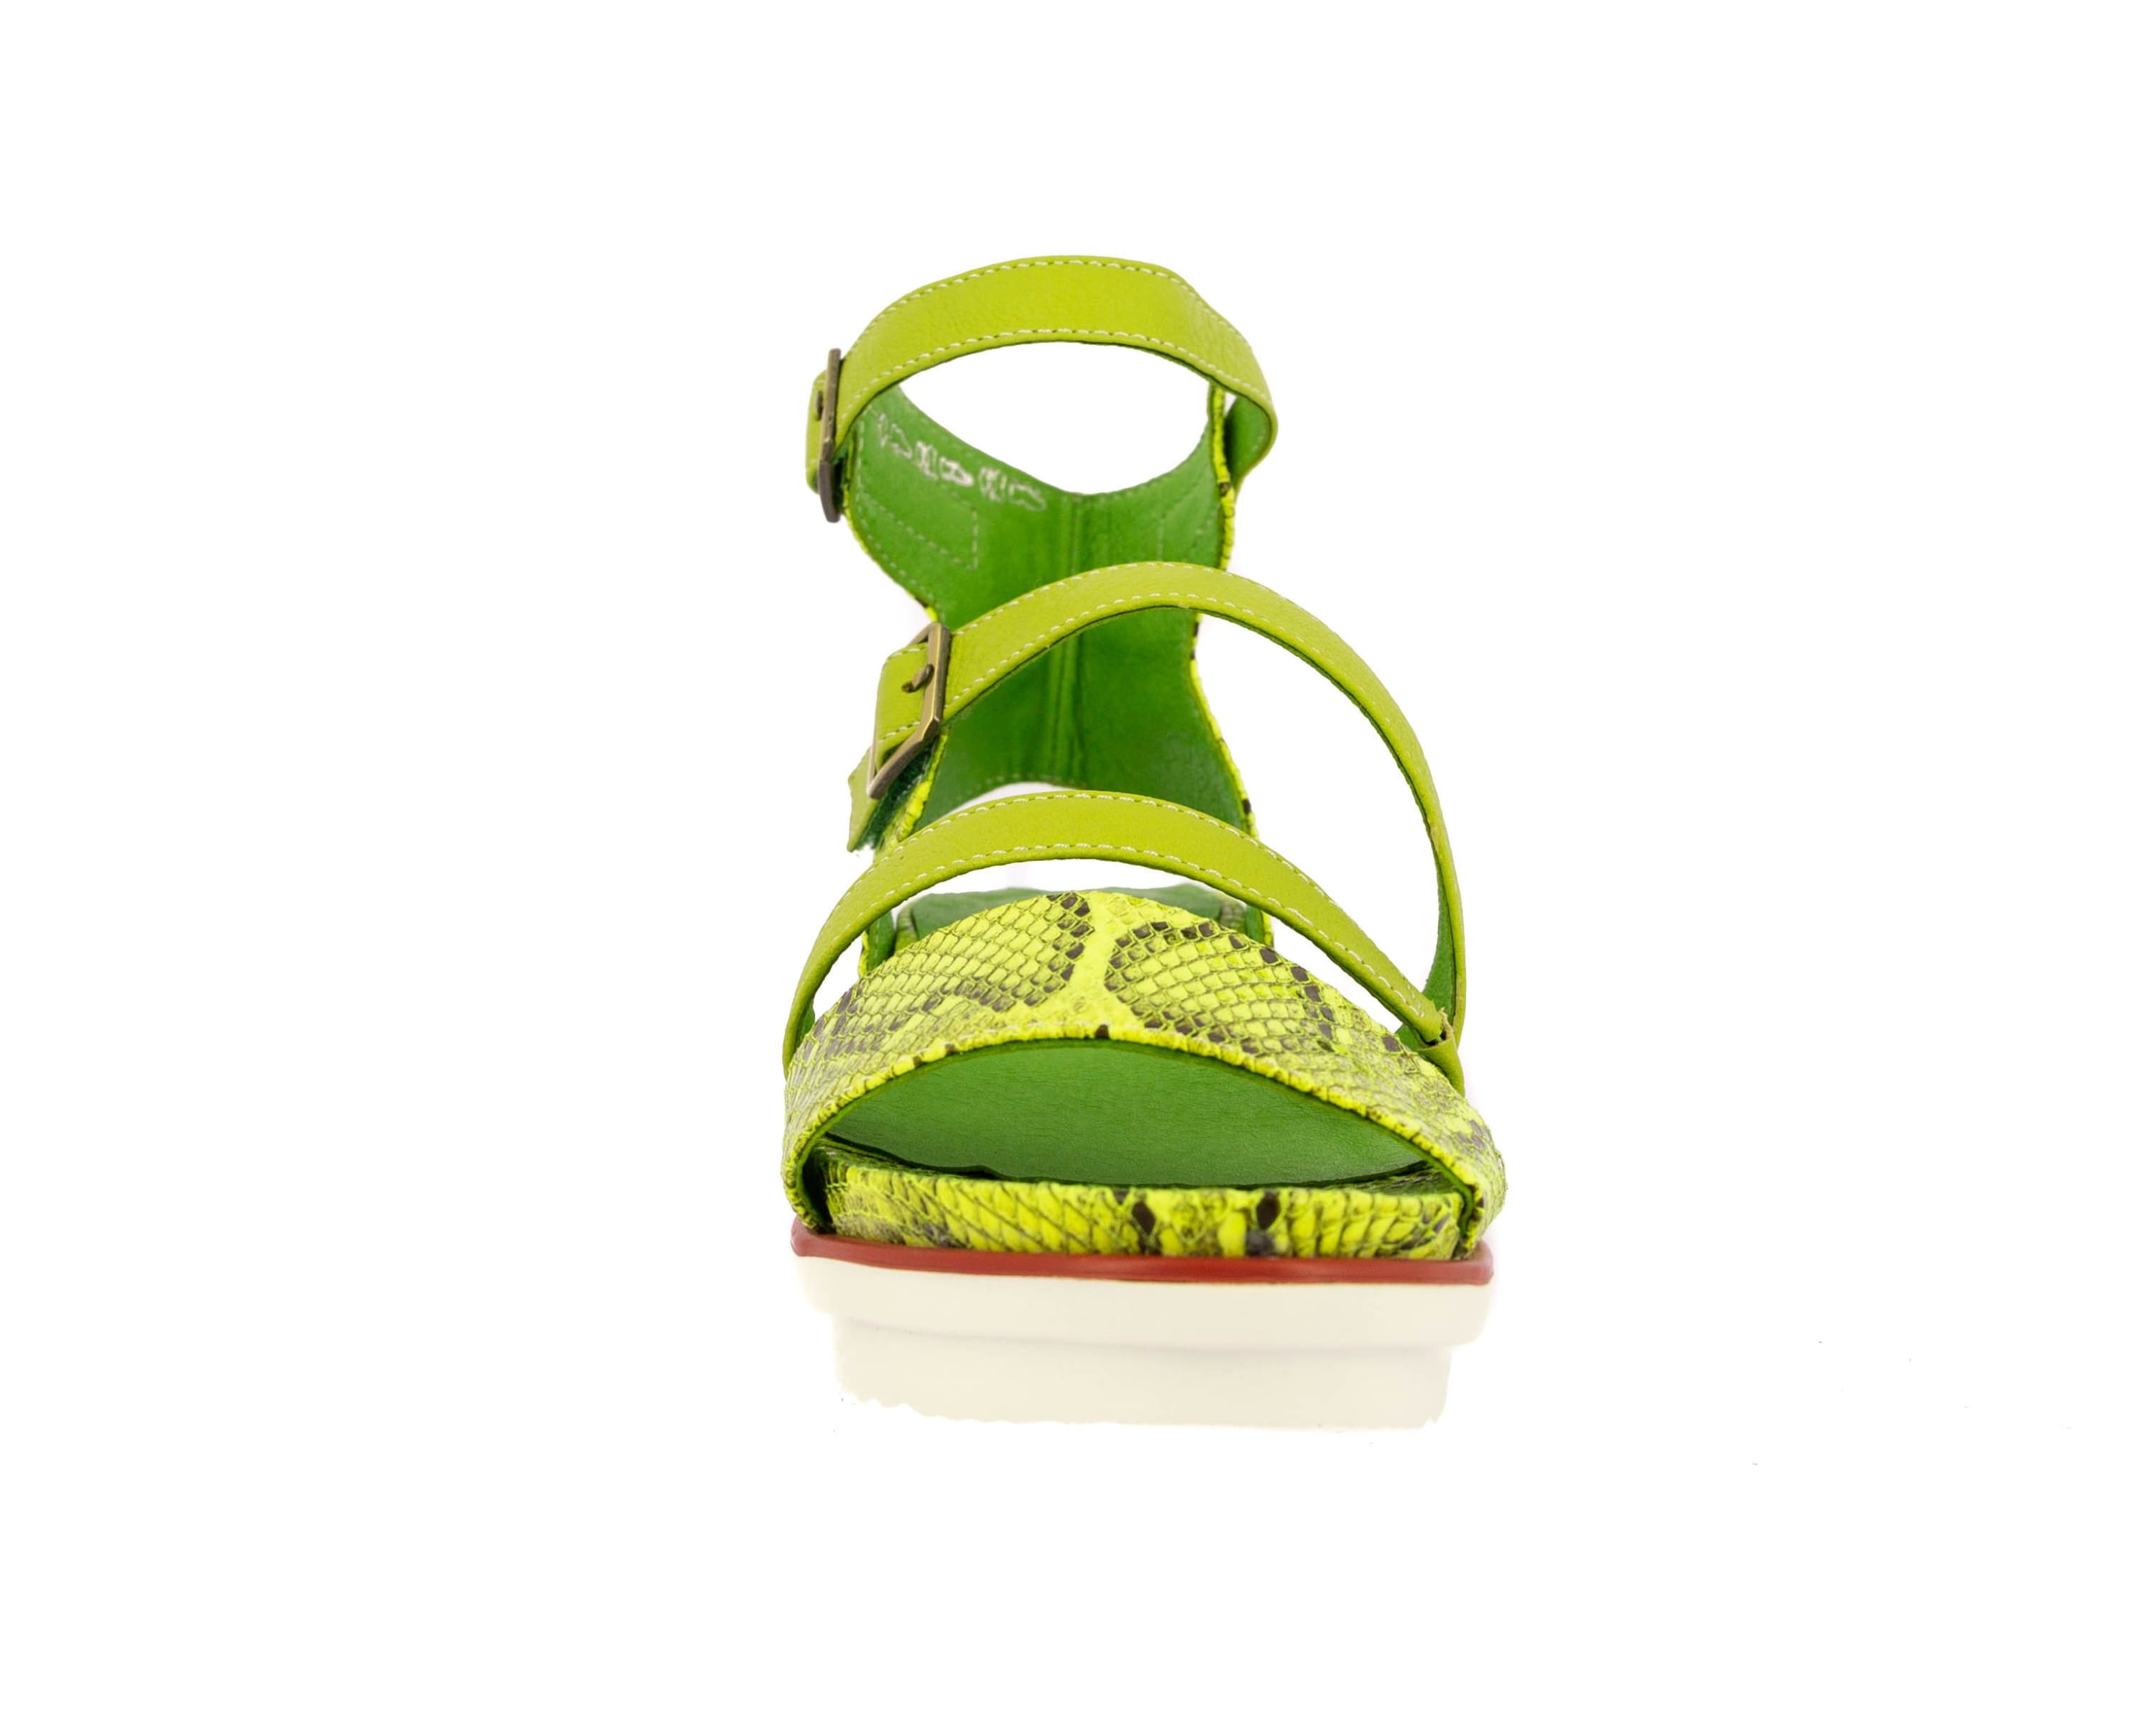 DICEZEO 01 Shoes - Sandal